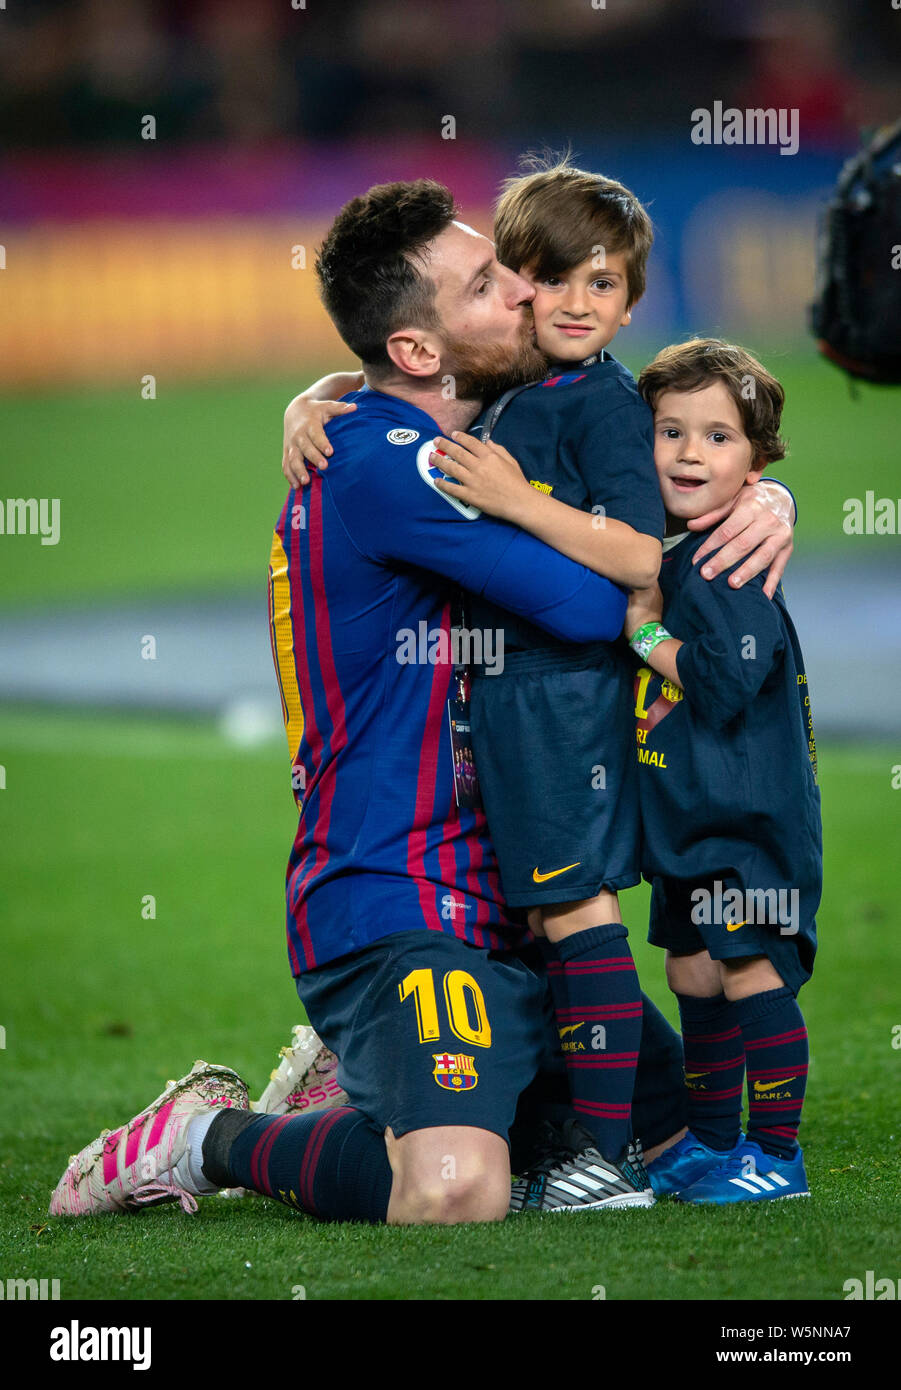 Hãy cùng đắm chìm vào thiên đường bóng đá với hình nền Messi boot kiss đầy cảm xúc. Điều gì có thể tuyệt hơn khi nhìn thấy cú nụ hôn này được đặt lên đôi giày của huyền thoại bóng đá? Hãy khám phá và cảm nhận với bức ảnh tuyệt đẹp này.